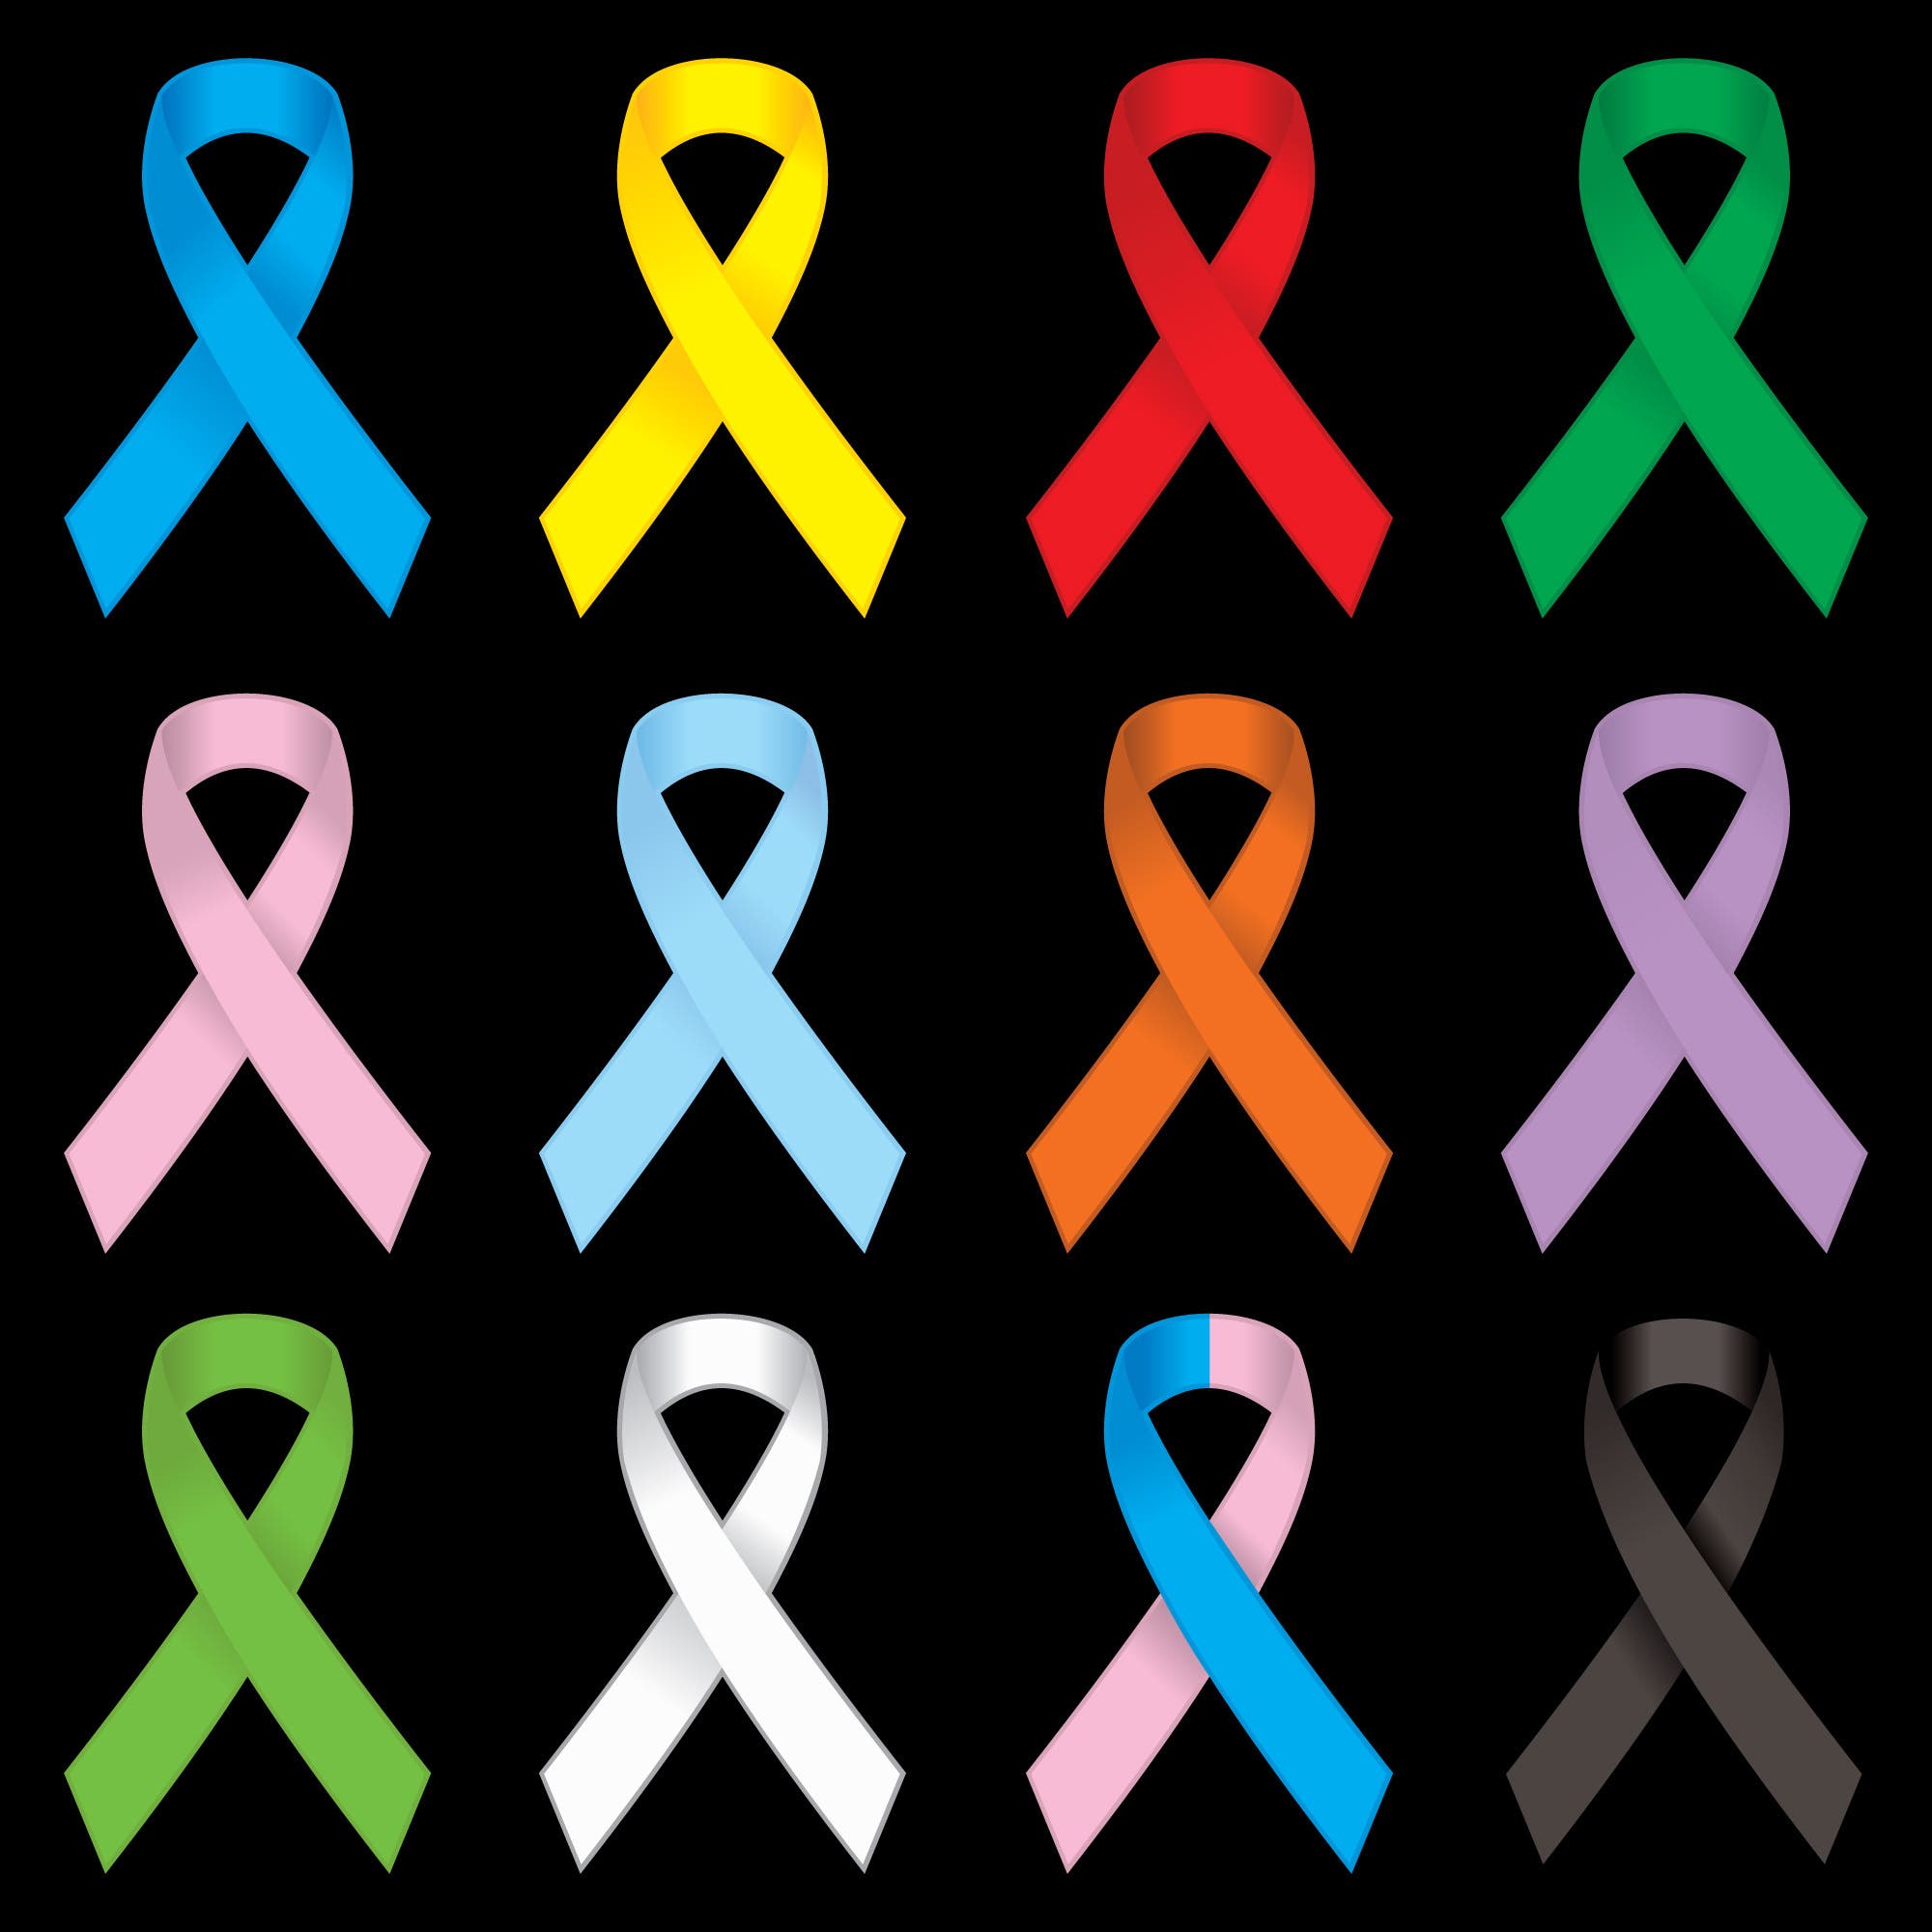 أنواع السرطان المختلفة (istock)